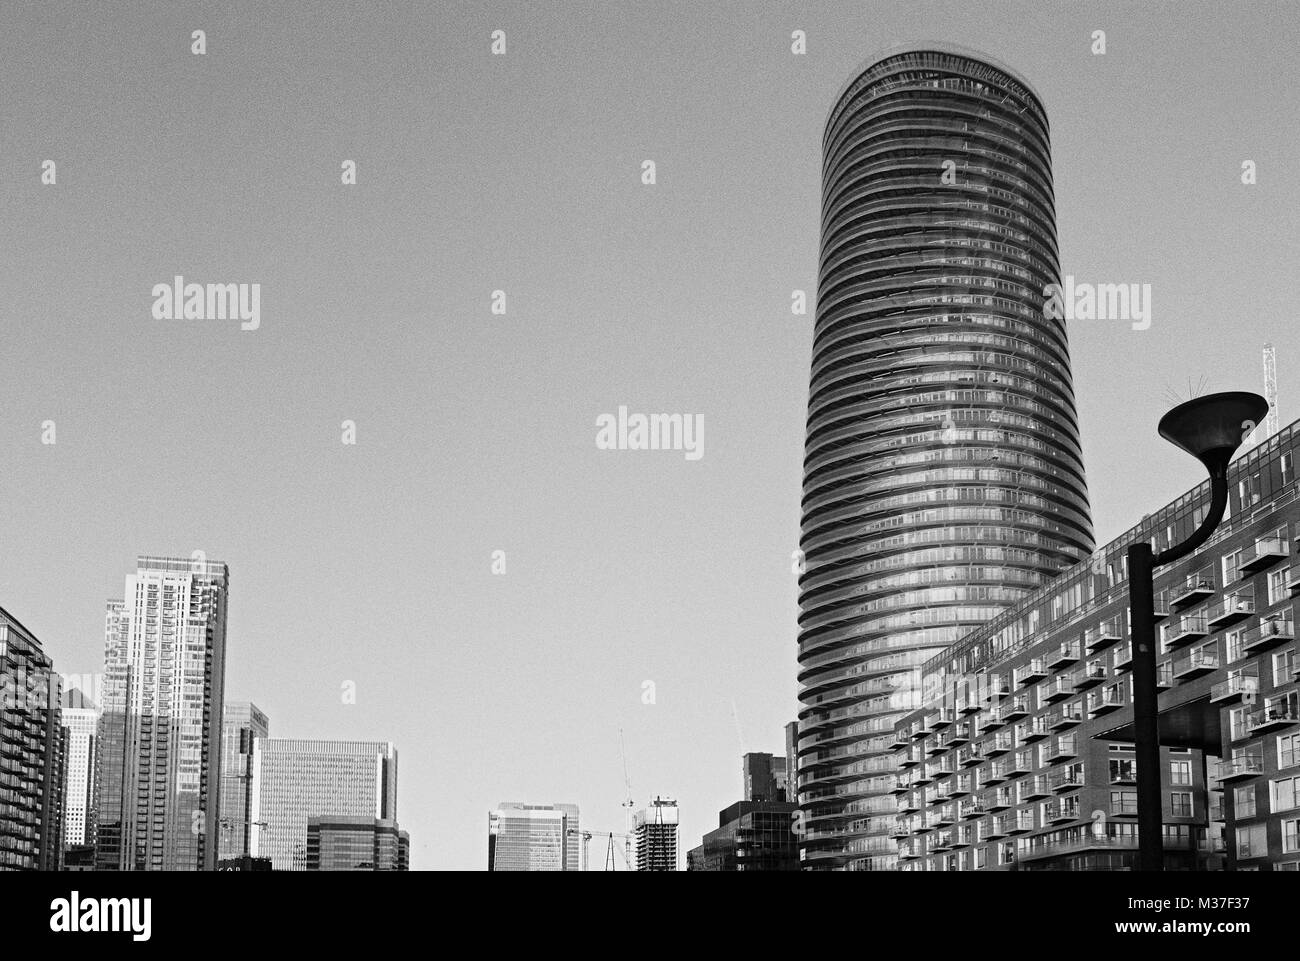 La nouvelle tour de Baltimore et immeubles de Canary Wharf, East London, UK Banque D'Images